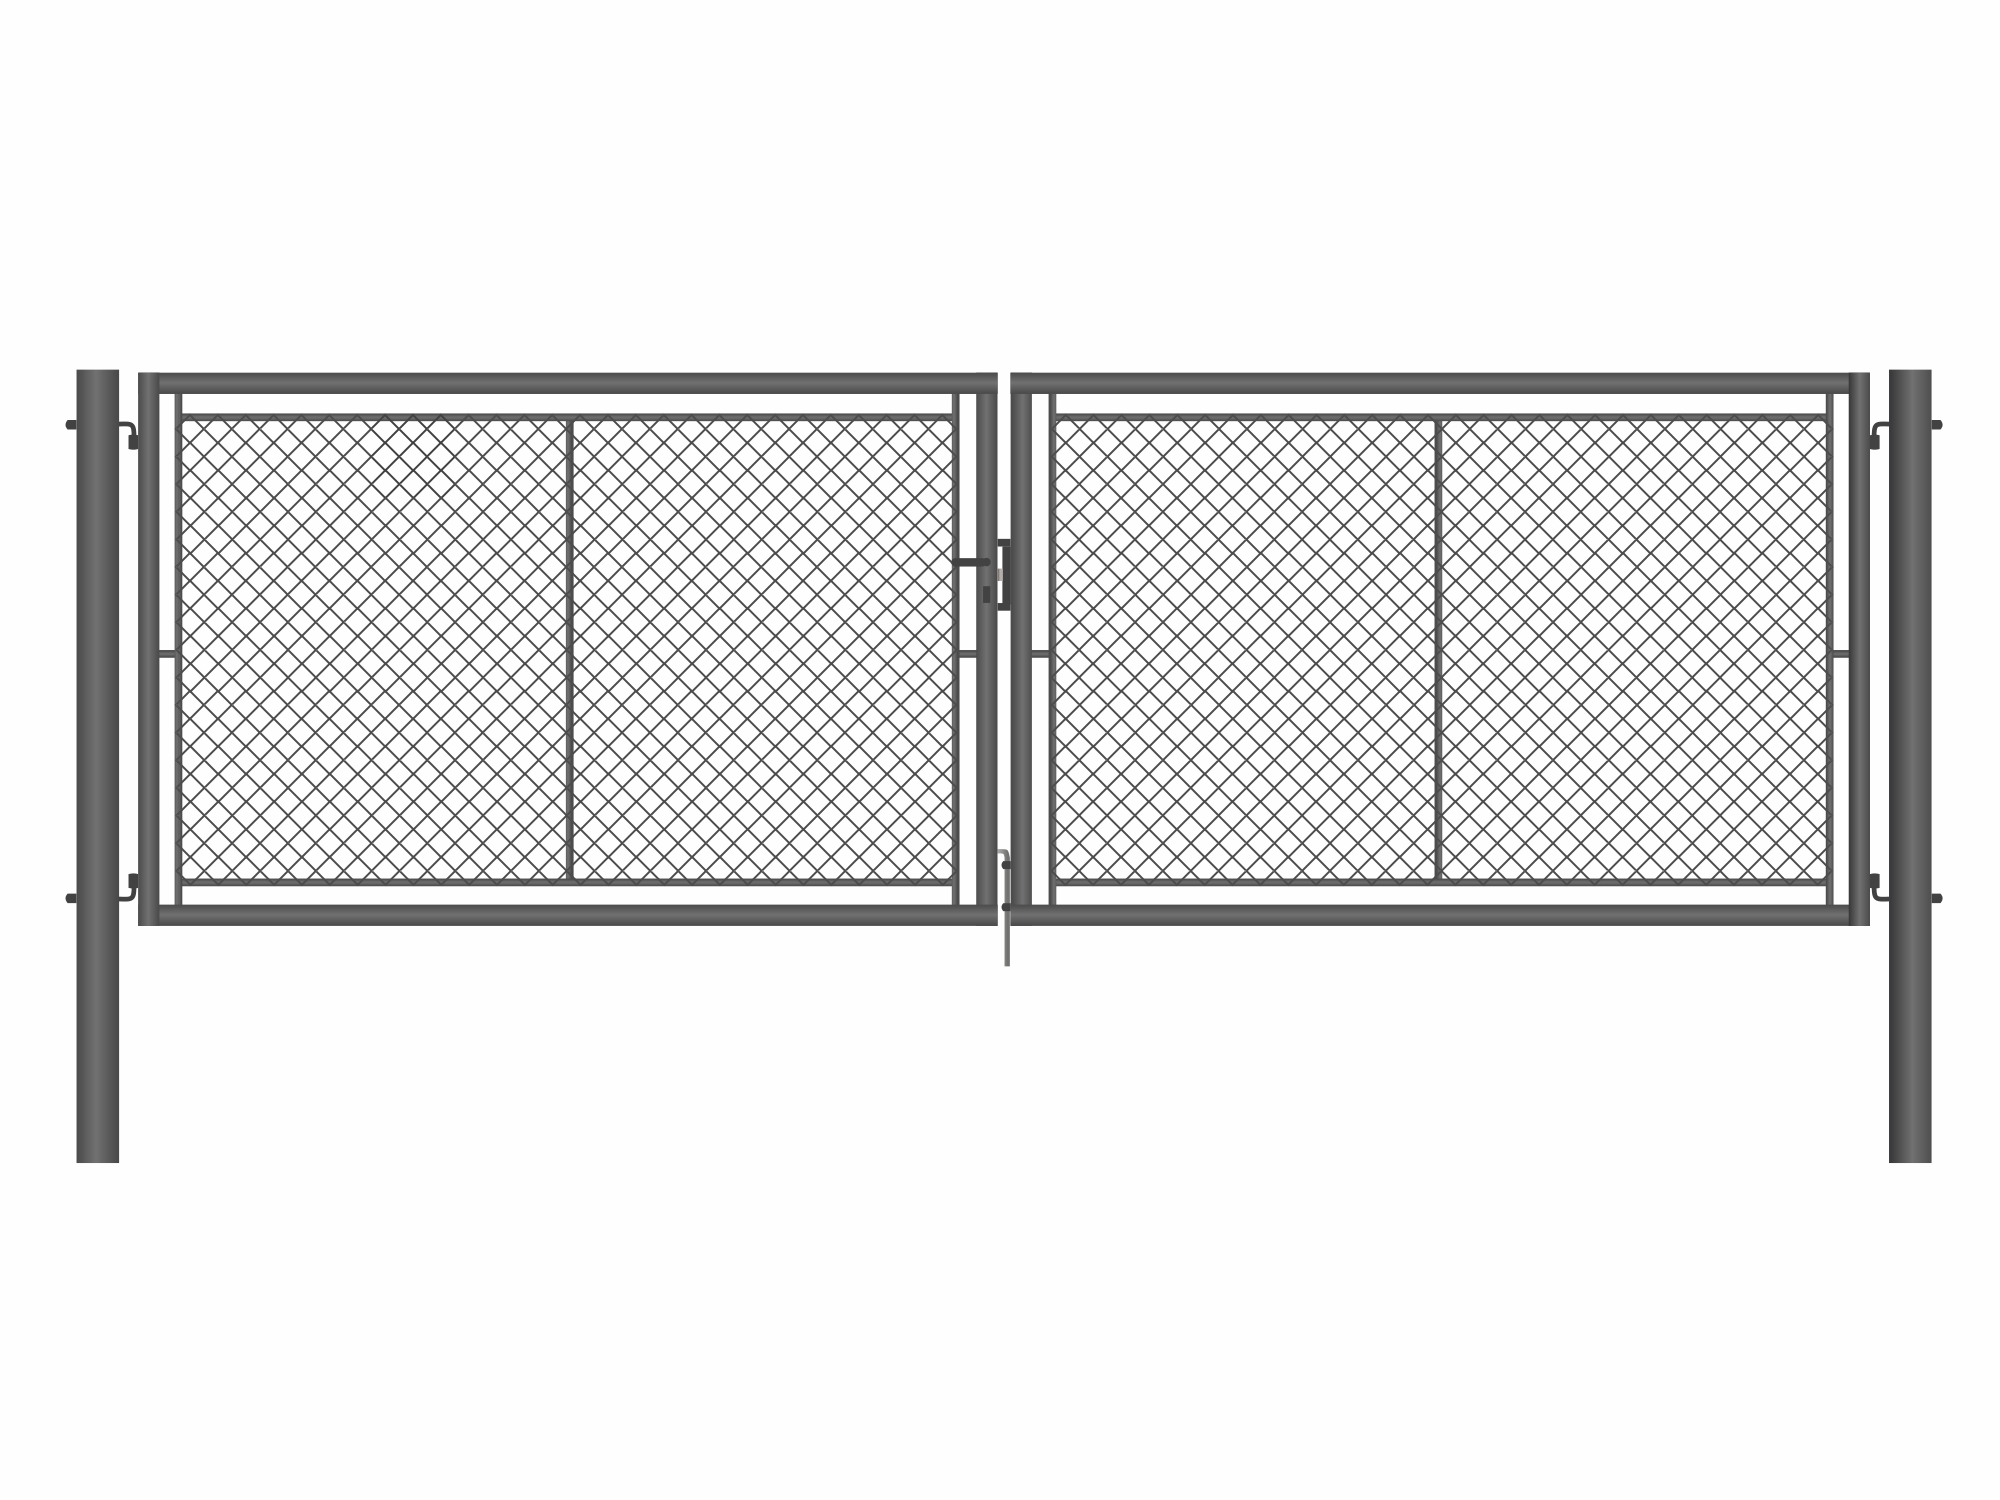 Brána zahradní dvoukřídlá antracit, výška 175 x 500 cm, FAB, s výplní klasického pletiva